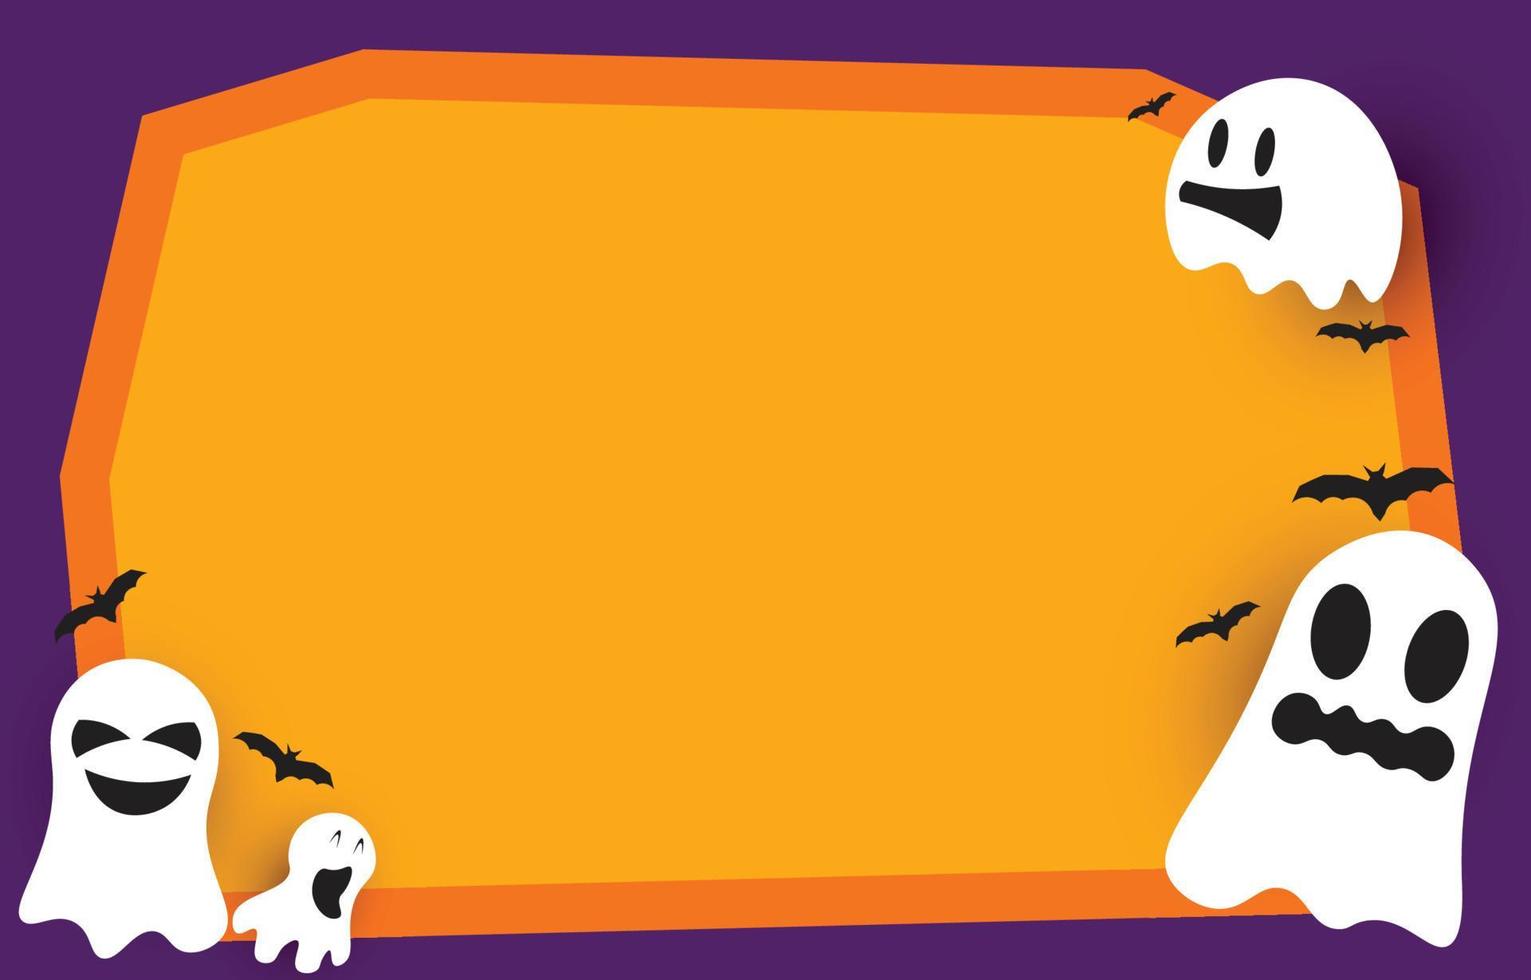 sfondo di carta bianca arancione con fantasmi e pipistrelli spaventosi e divertenti, con spazio per la copia per il design di halloween, illustrazione vettoriale. vettore